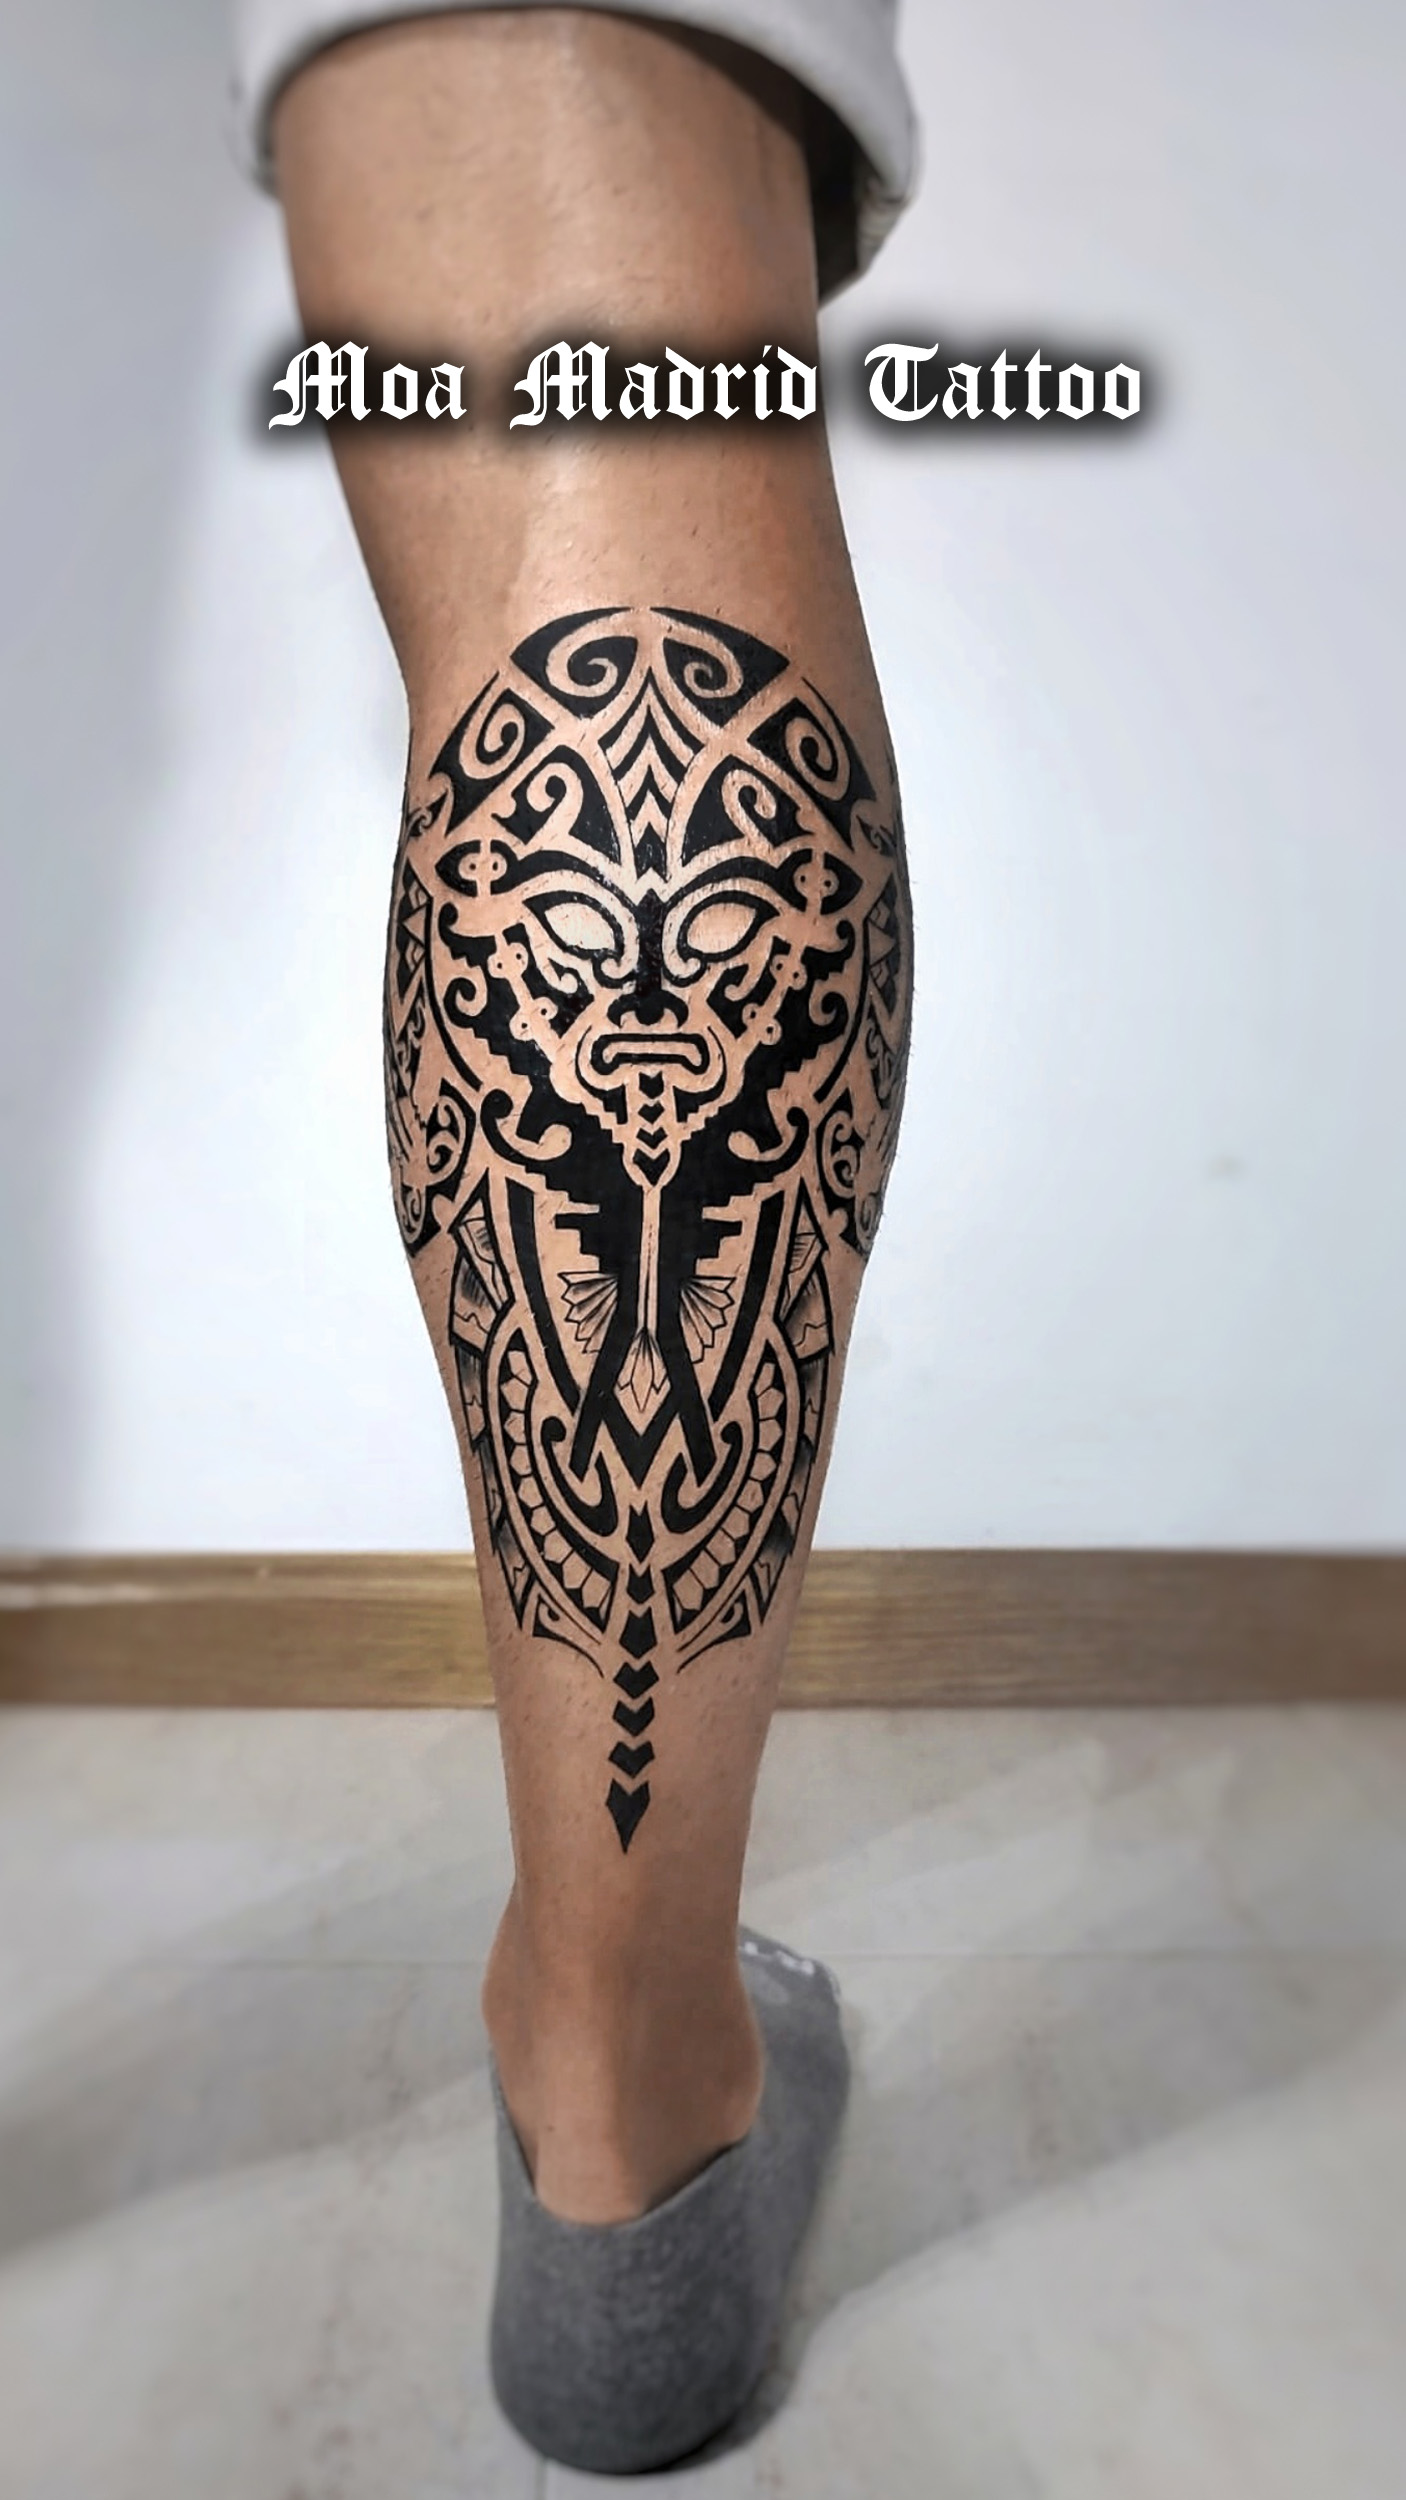 Moderno tatuaje maorí en el gemelo